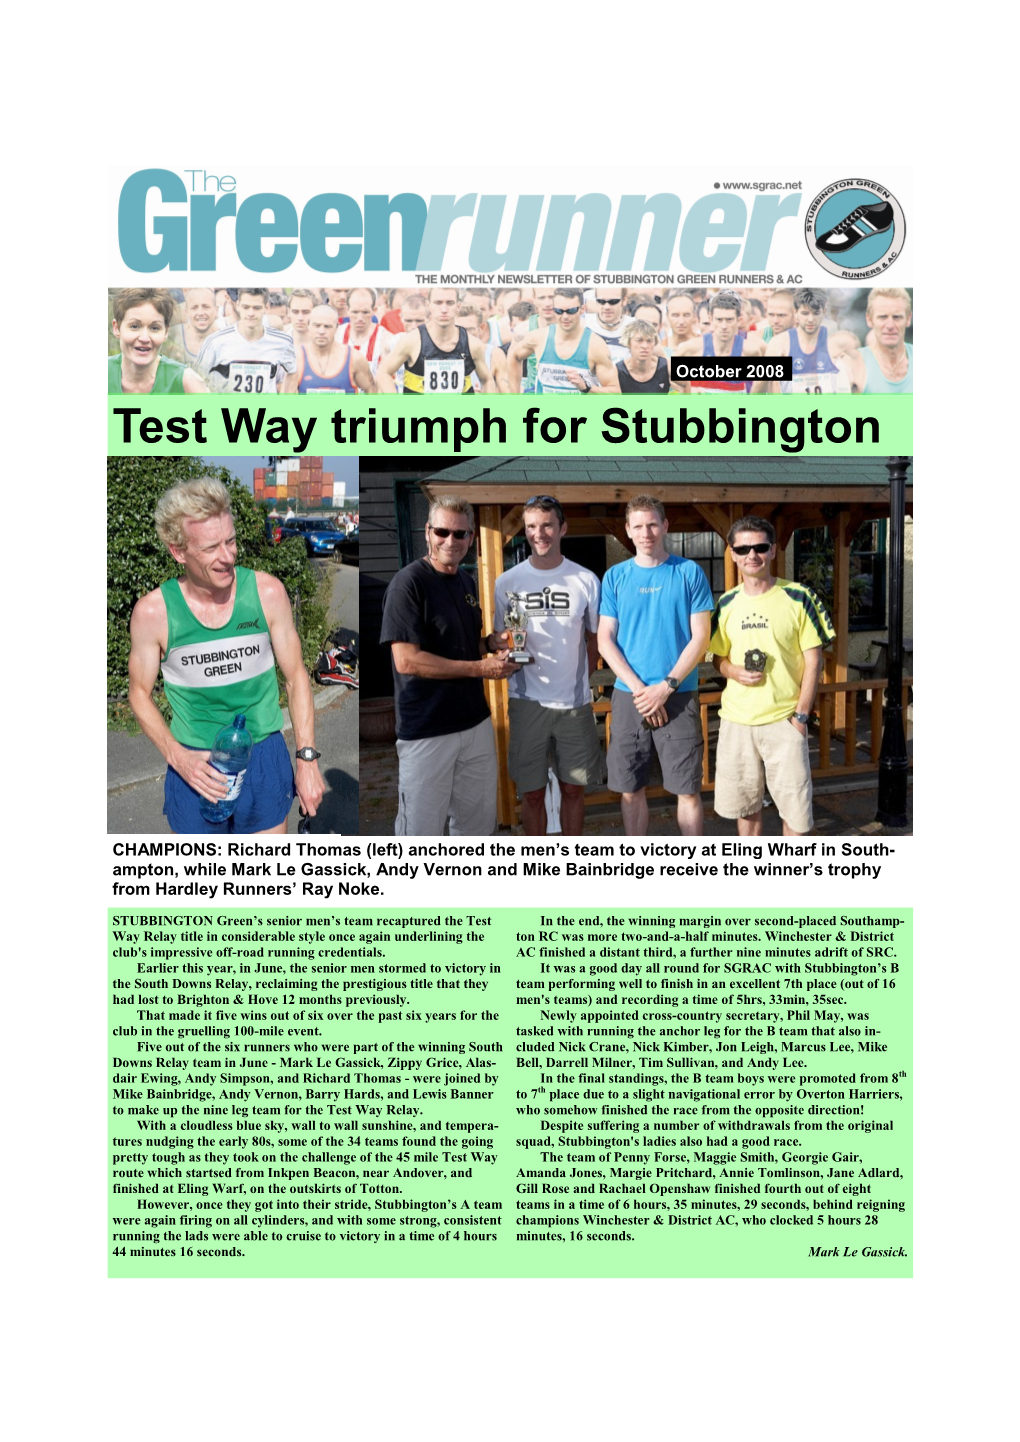 Test Way Triumph for Stubbington